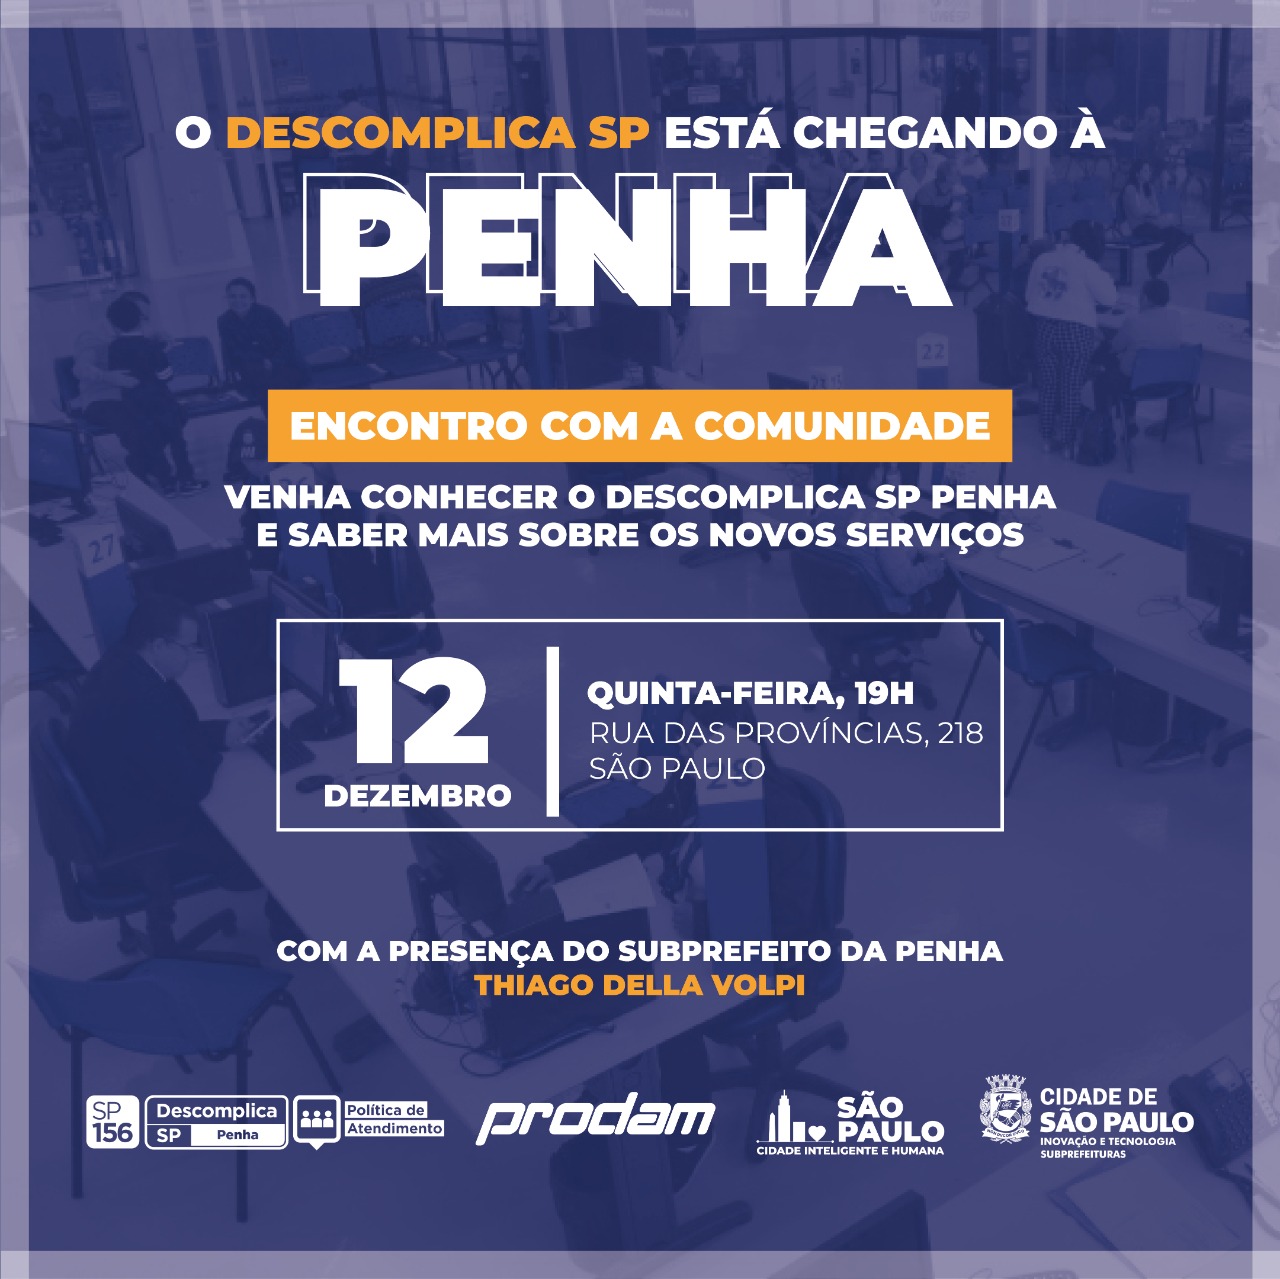 convite para apresentação dos serviços do Descomplica SP Penha 